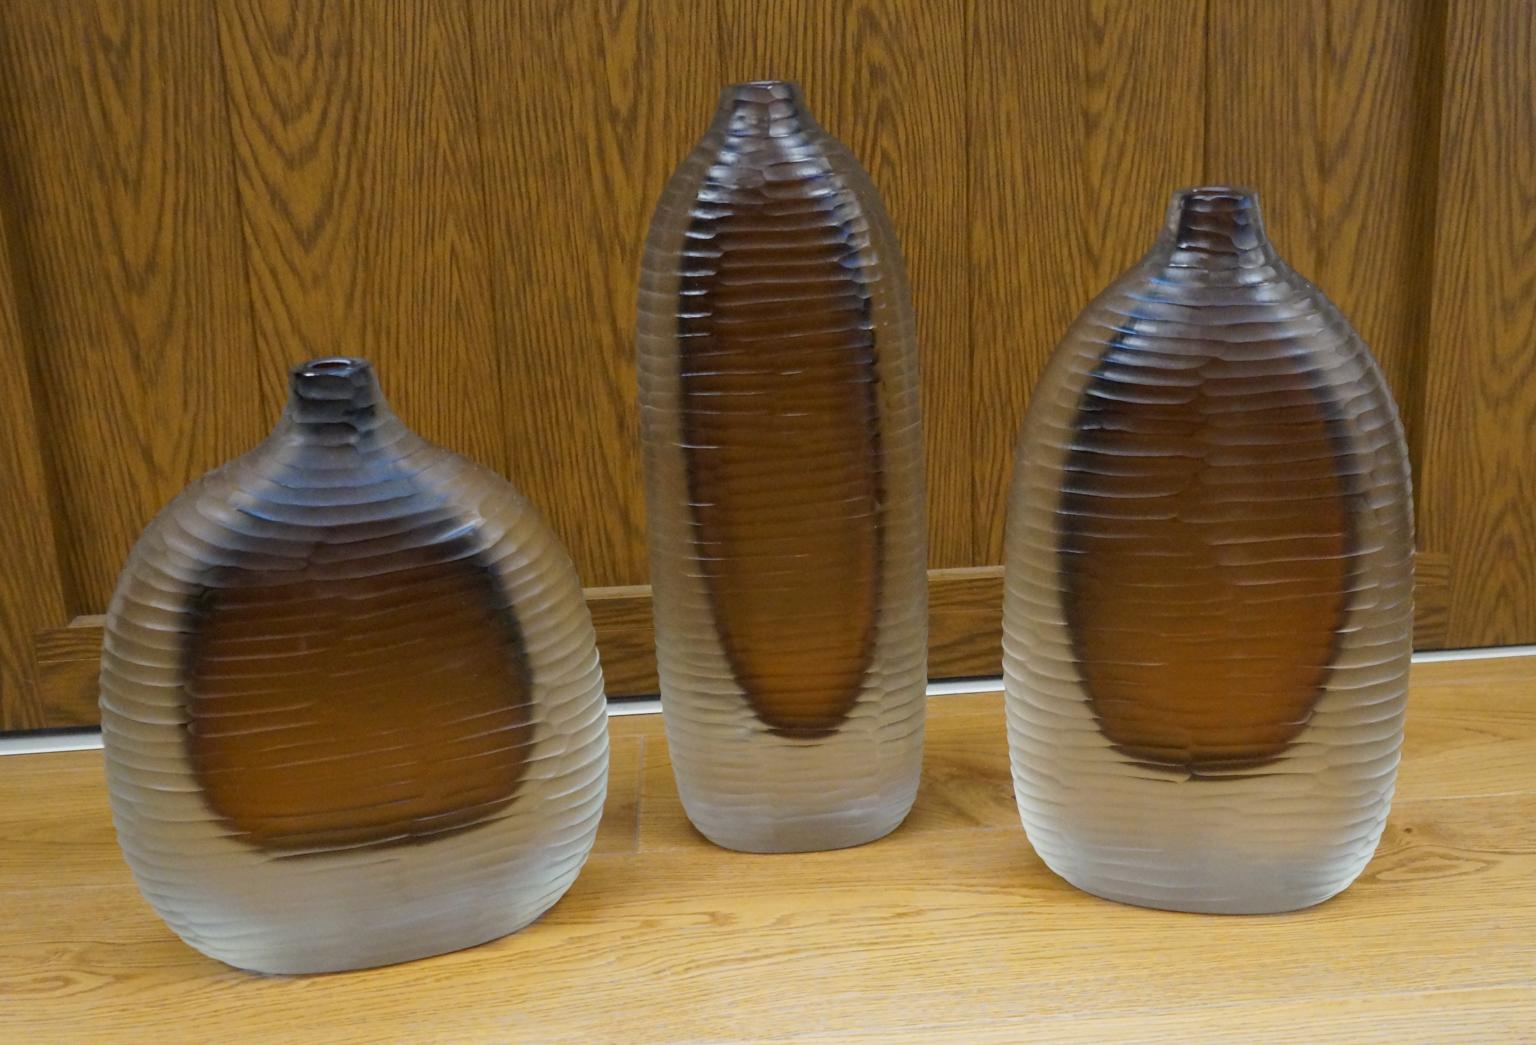 Drei Vasen aus mundgeblasenem Muranoglas Molato (graviert), Farbe klar und Bernstein innen.
Um diese Arbeit auszuführen, sind zwei verschiedene Prozesse erforderlich: Der erste besteht darin, die heiße Vase zu modellieren und ihr Form und Farbe zu